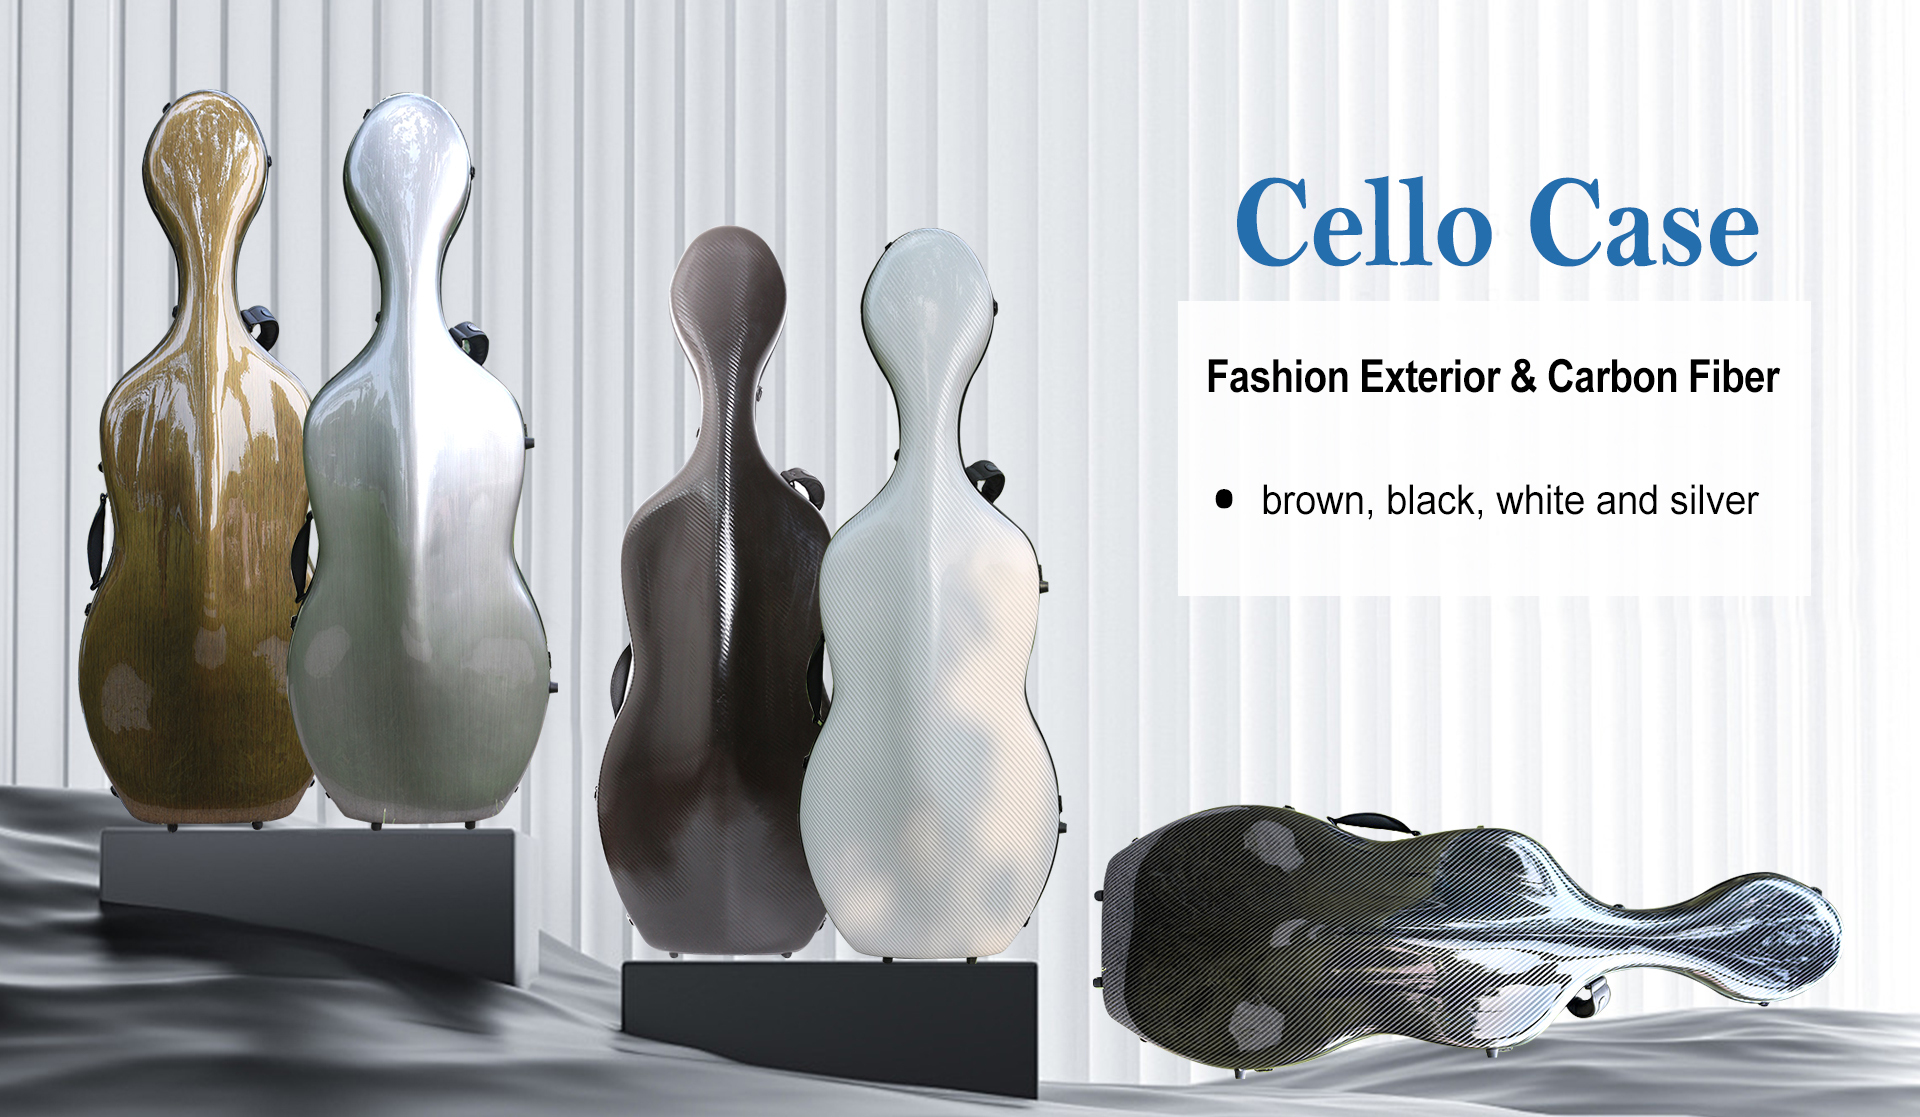 Advance 4/4 Cello Case Carbon Fiber Cello Box Carry Hard Box Black Color Strong...sandmaster23 